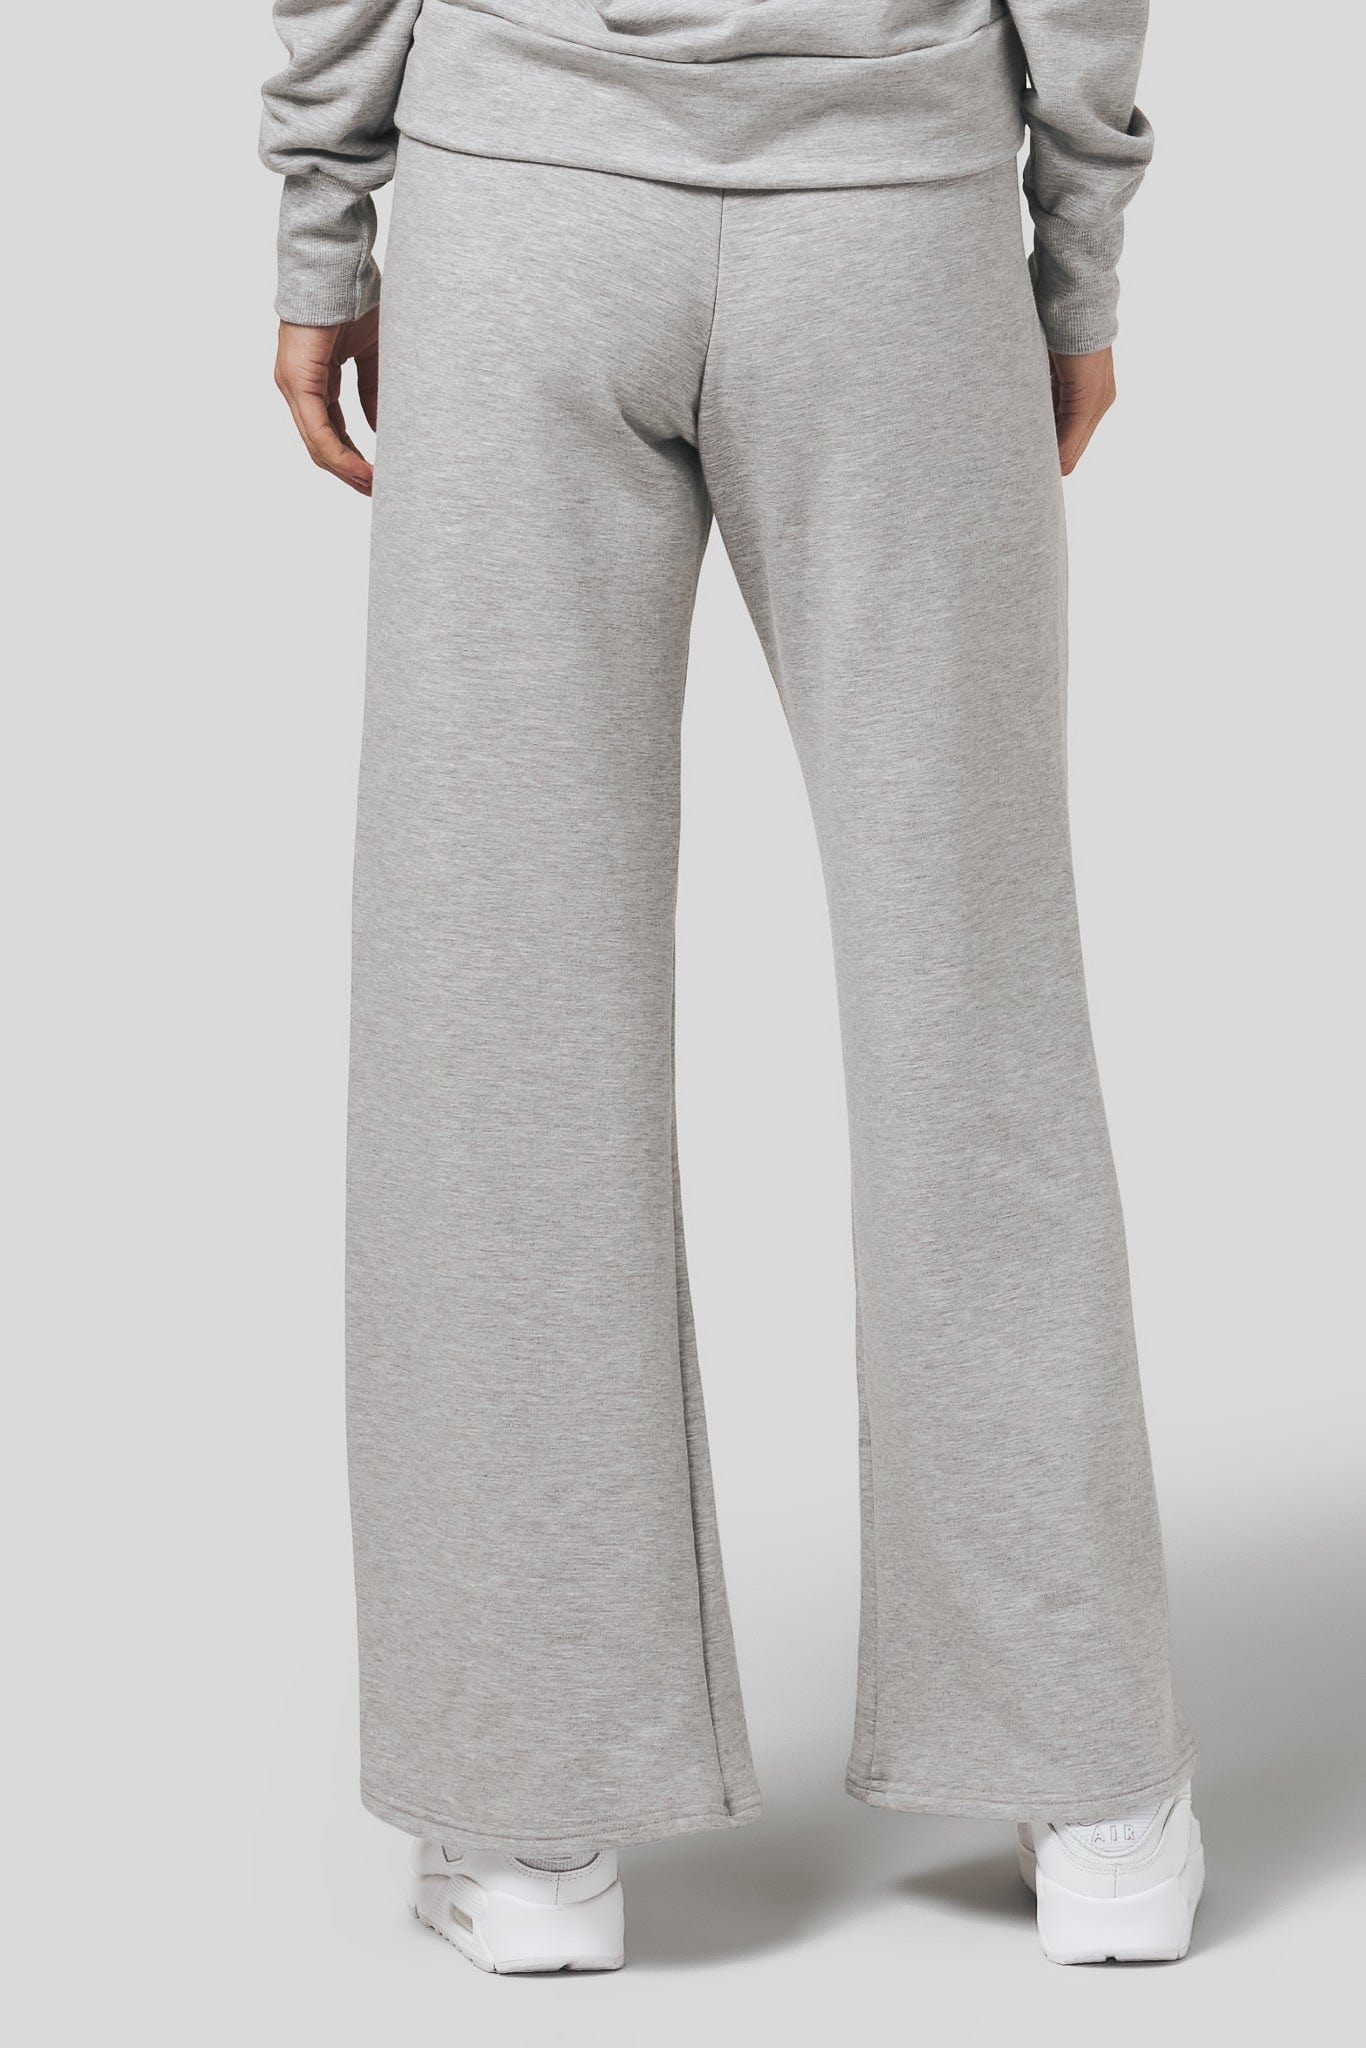 Back of a women wearing a wide leg sweatpants in light heather grey